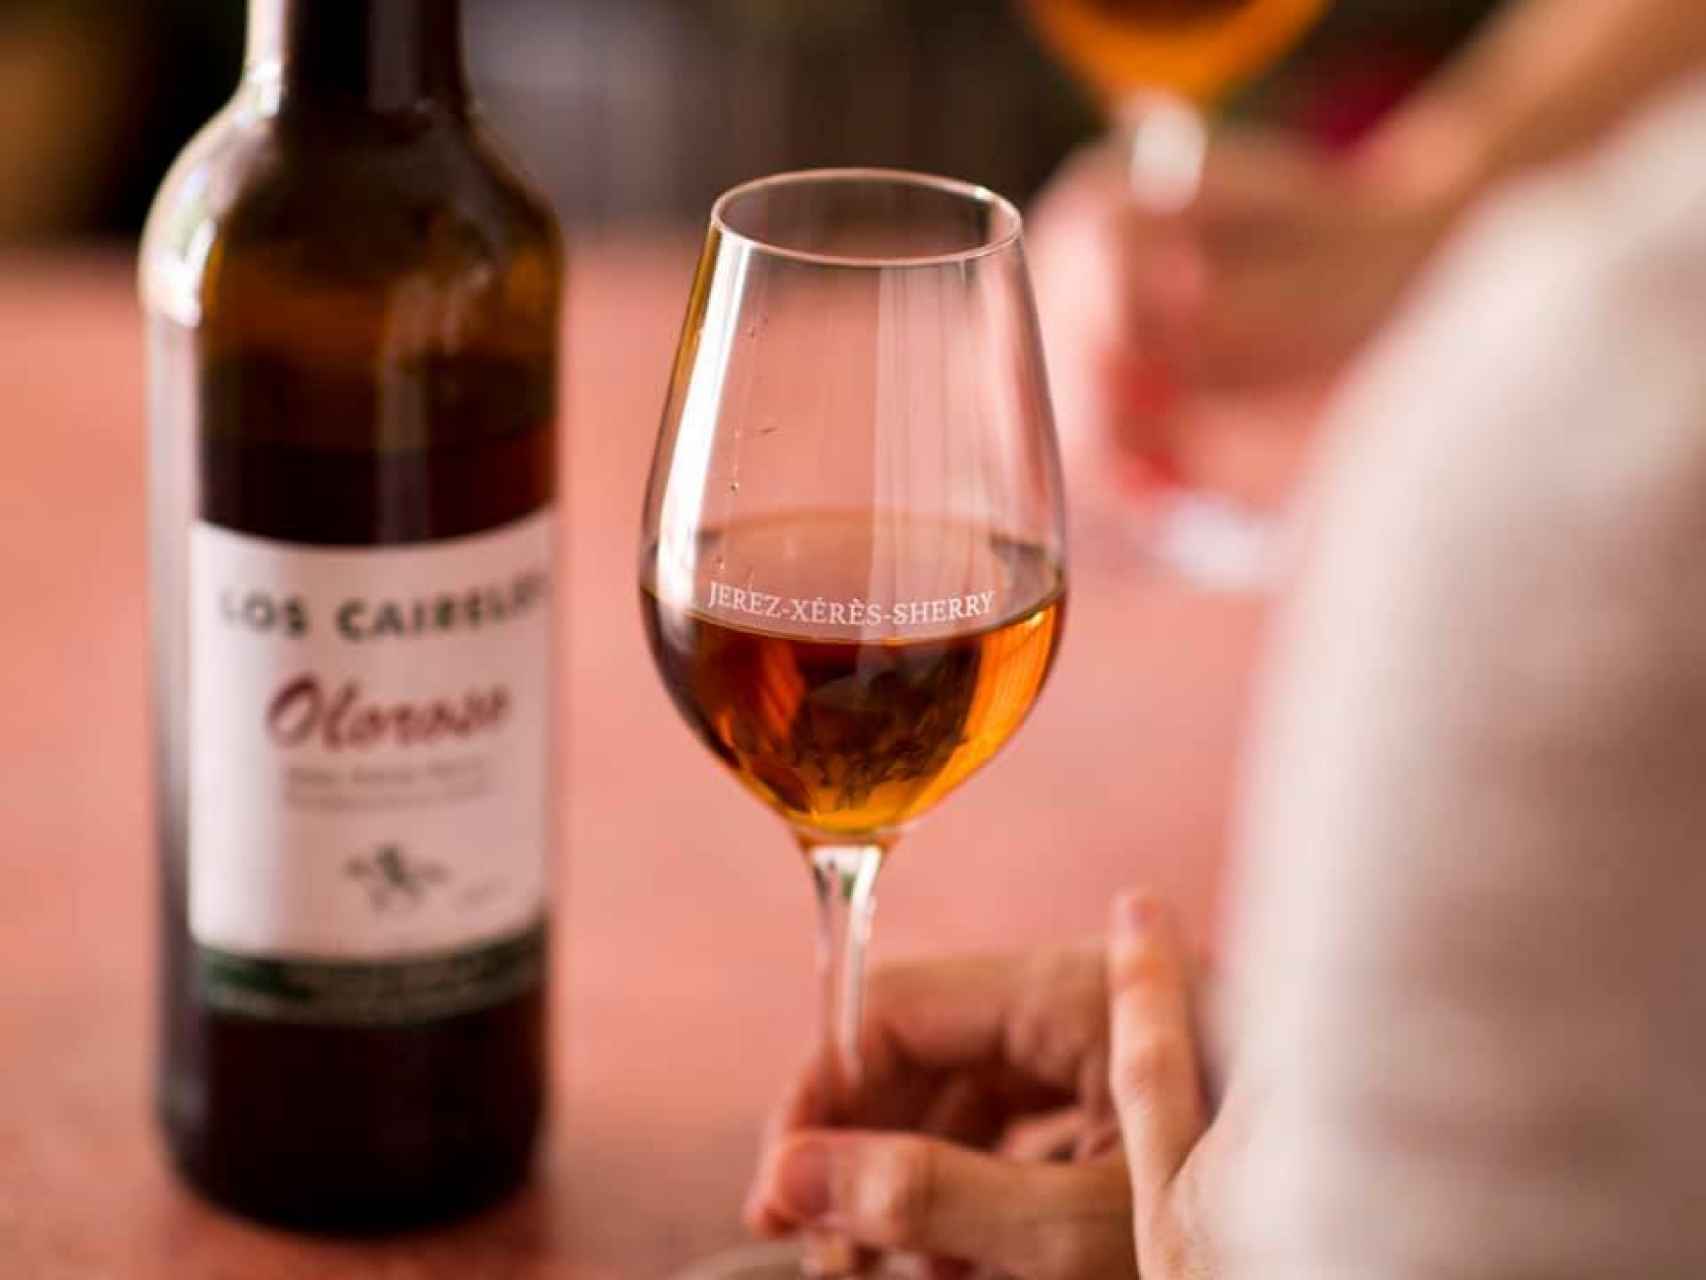 Oloroso es una mención tradicional de los vinos del Marco de Jerez.